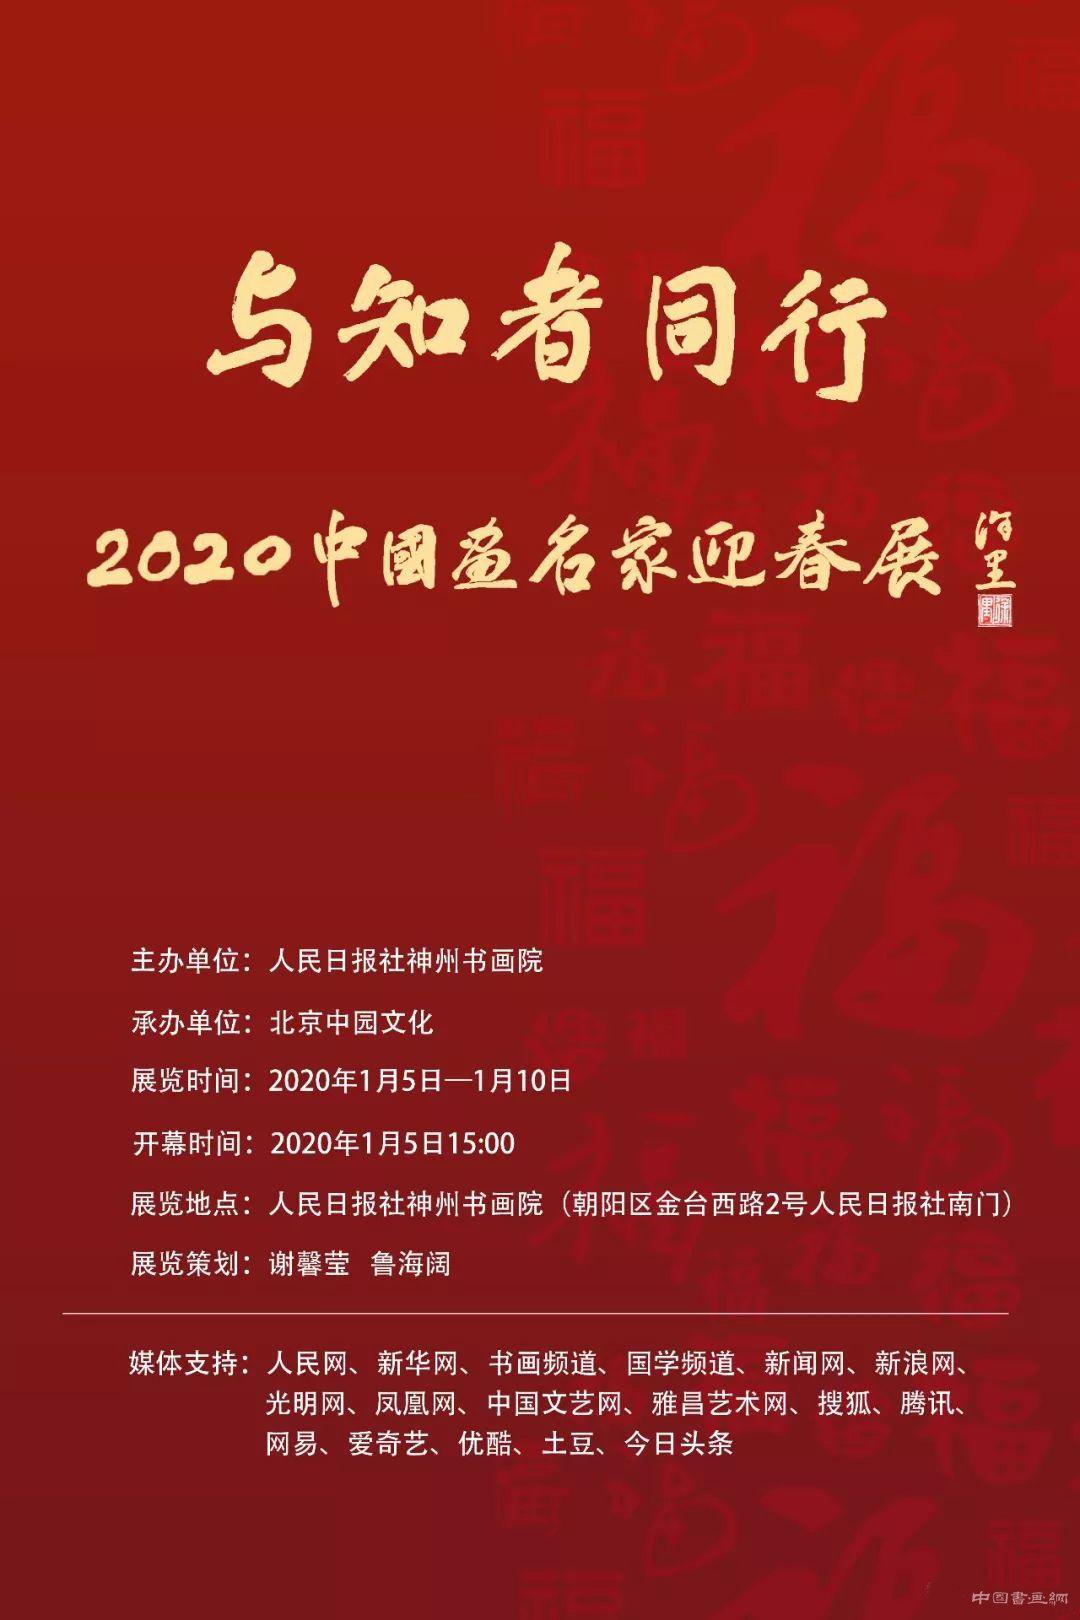 与知者同行——2020中国画名家迎春展